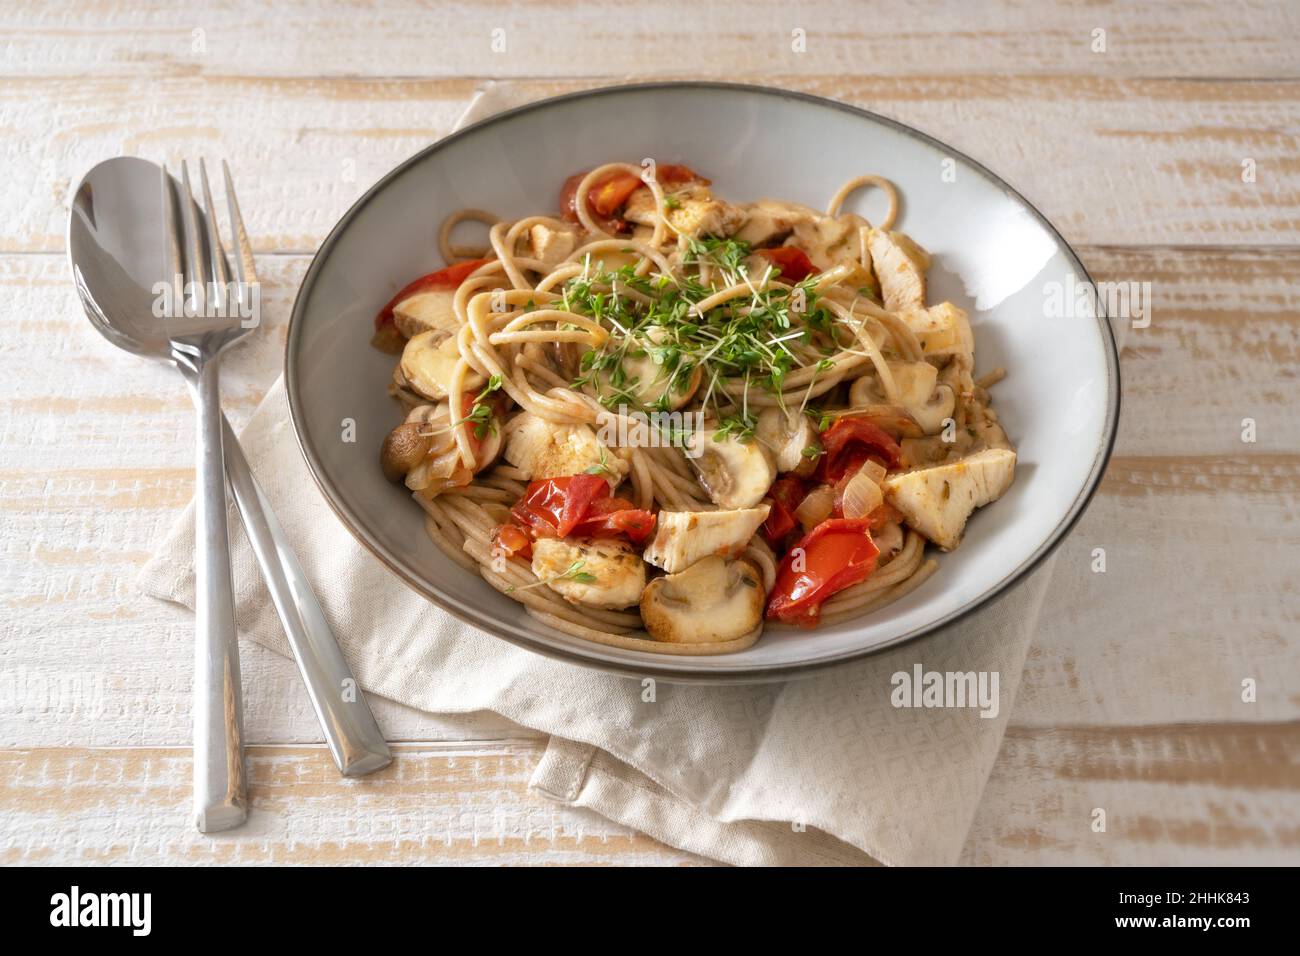 Vollkorn-Spaghetti mit Tomaten, Pilzen und Hähnchenstreifen, garniert mit Kresse, grauem Teller und Besteck auf einem hellen rustikalen Holztisch, ausgewählt Stockfoto